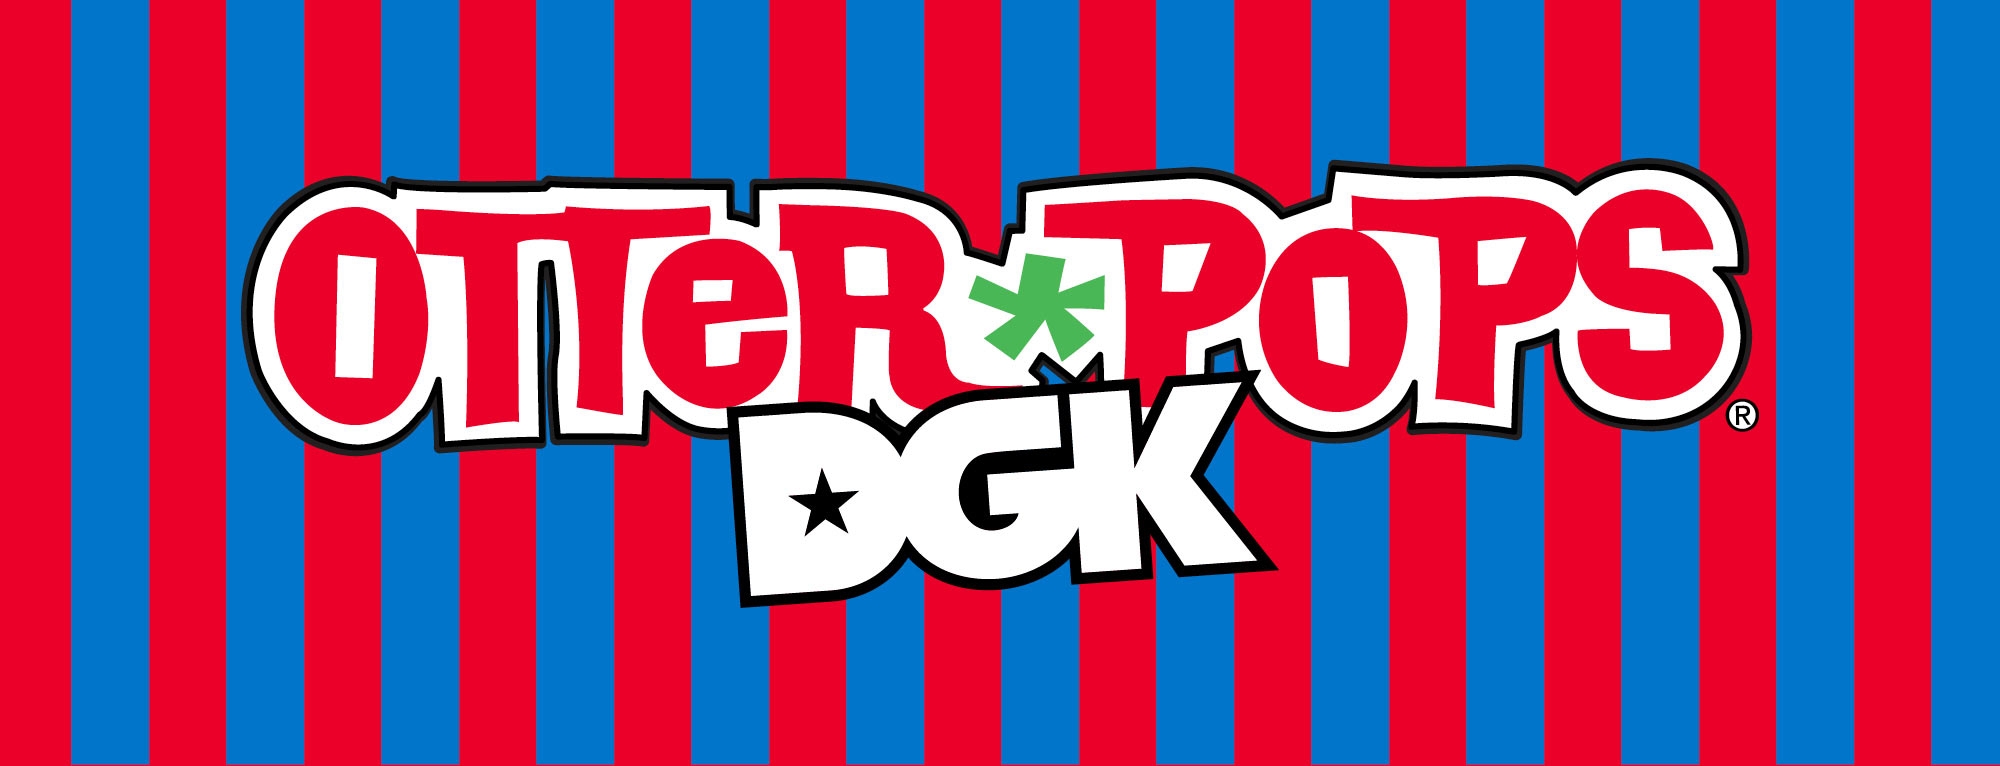 DGK x Otter Pops